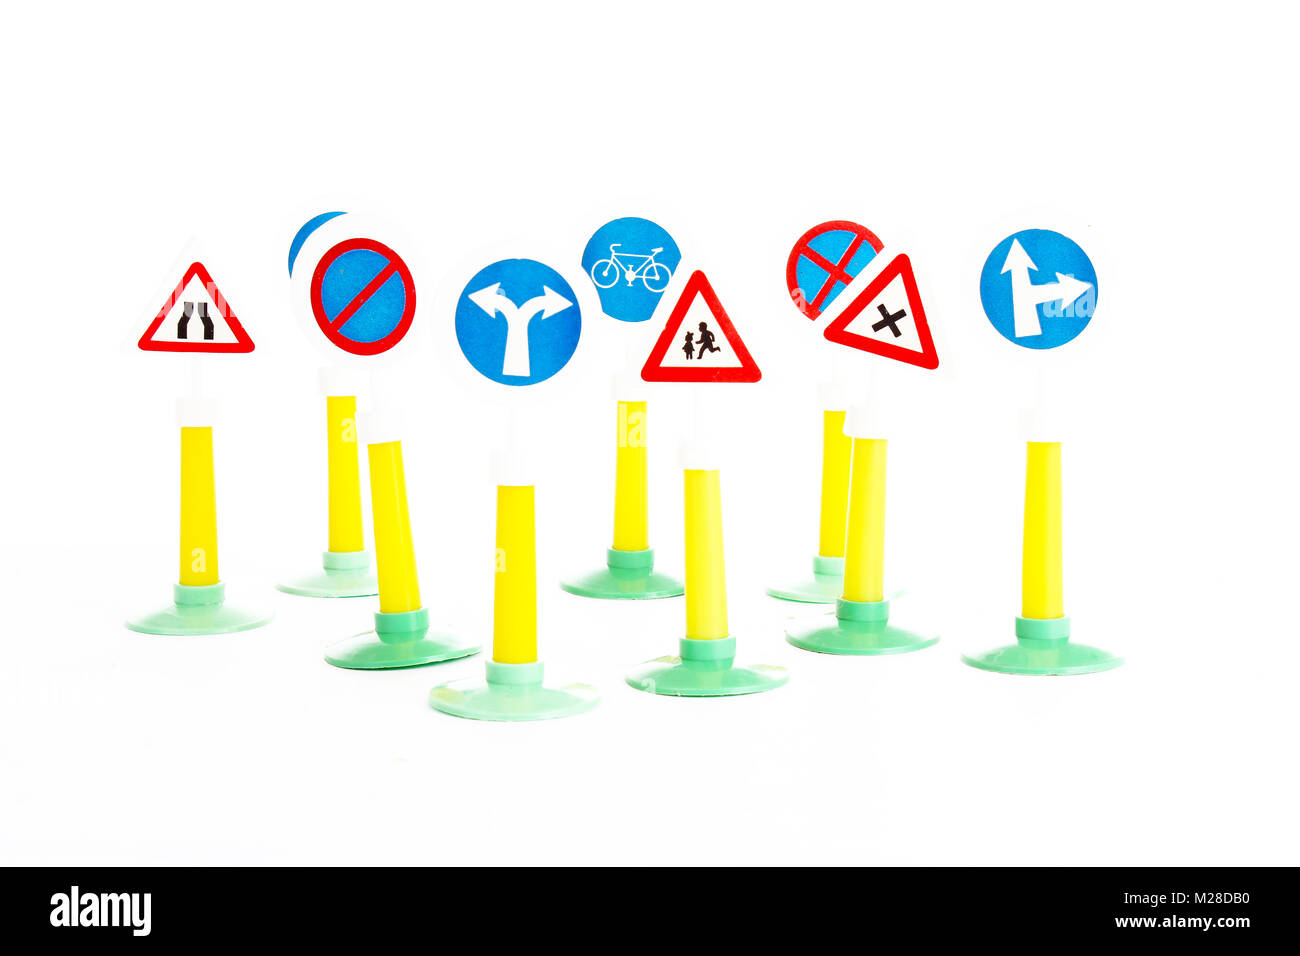 El código de la circulación de vehículos y seguridad vial, normas de derecho de conducción cartel juguetes.. Foto de stock